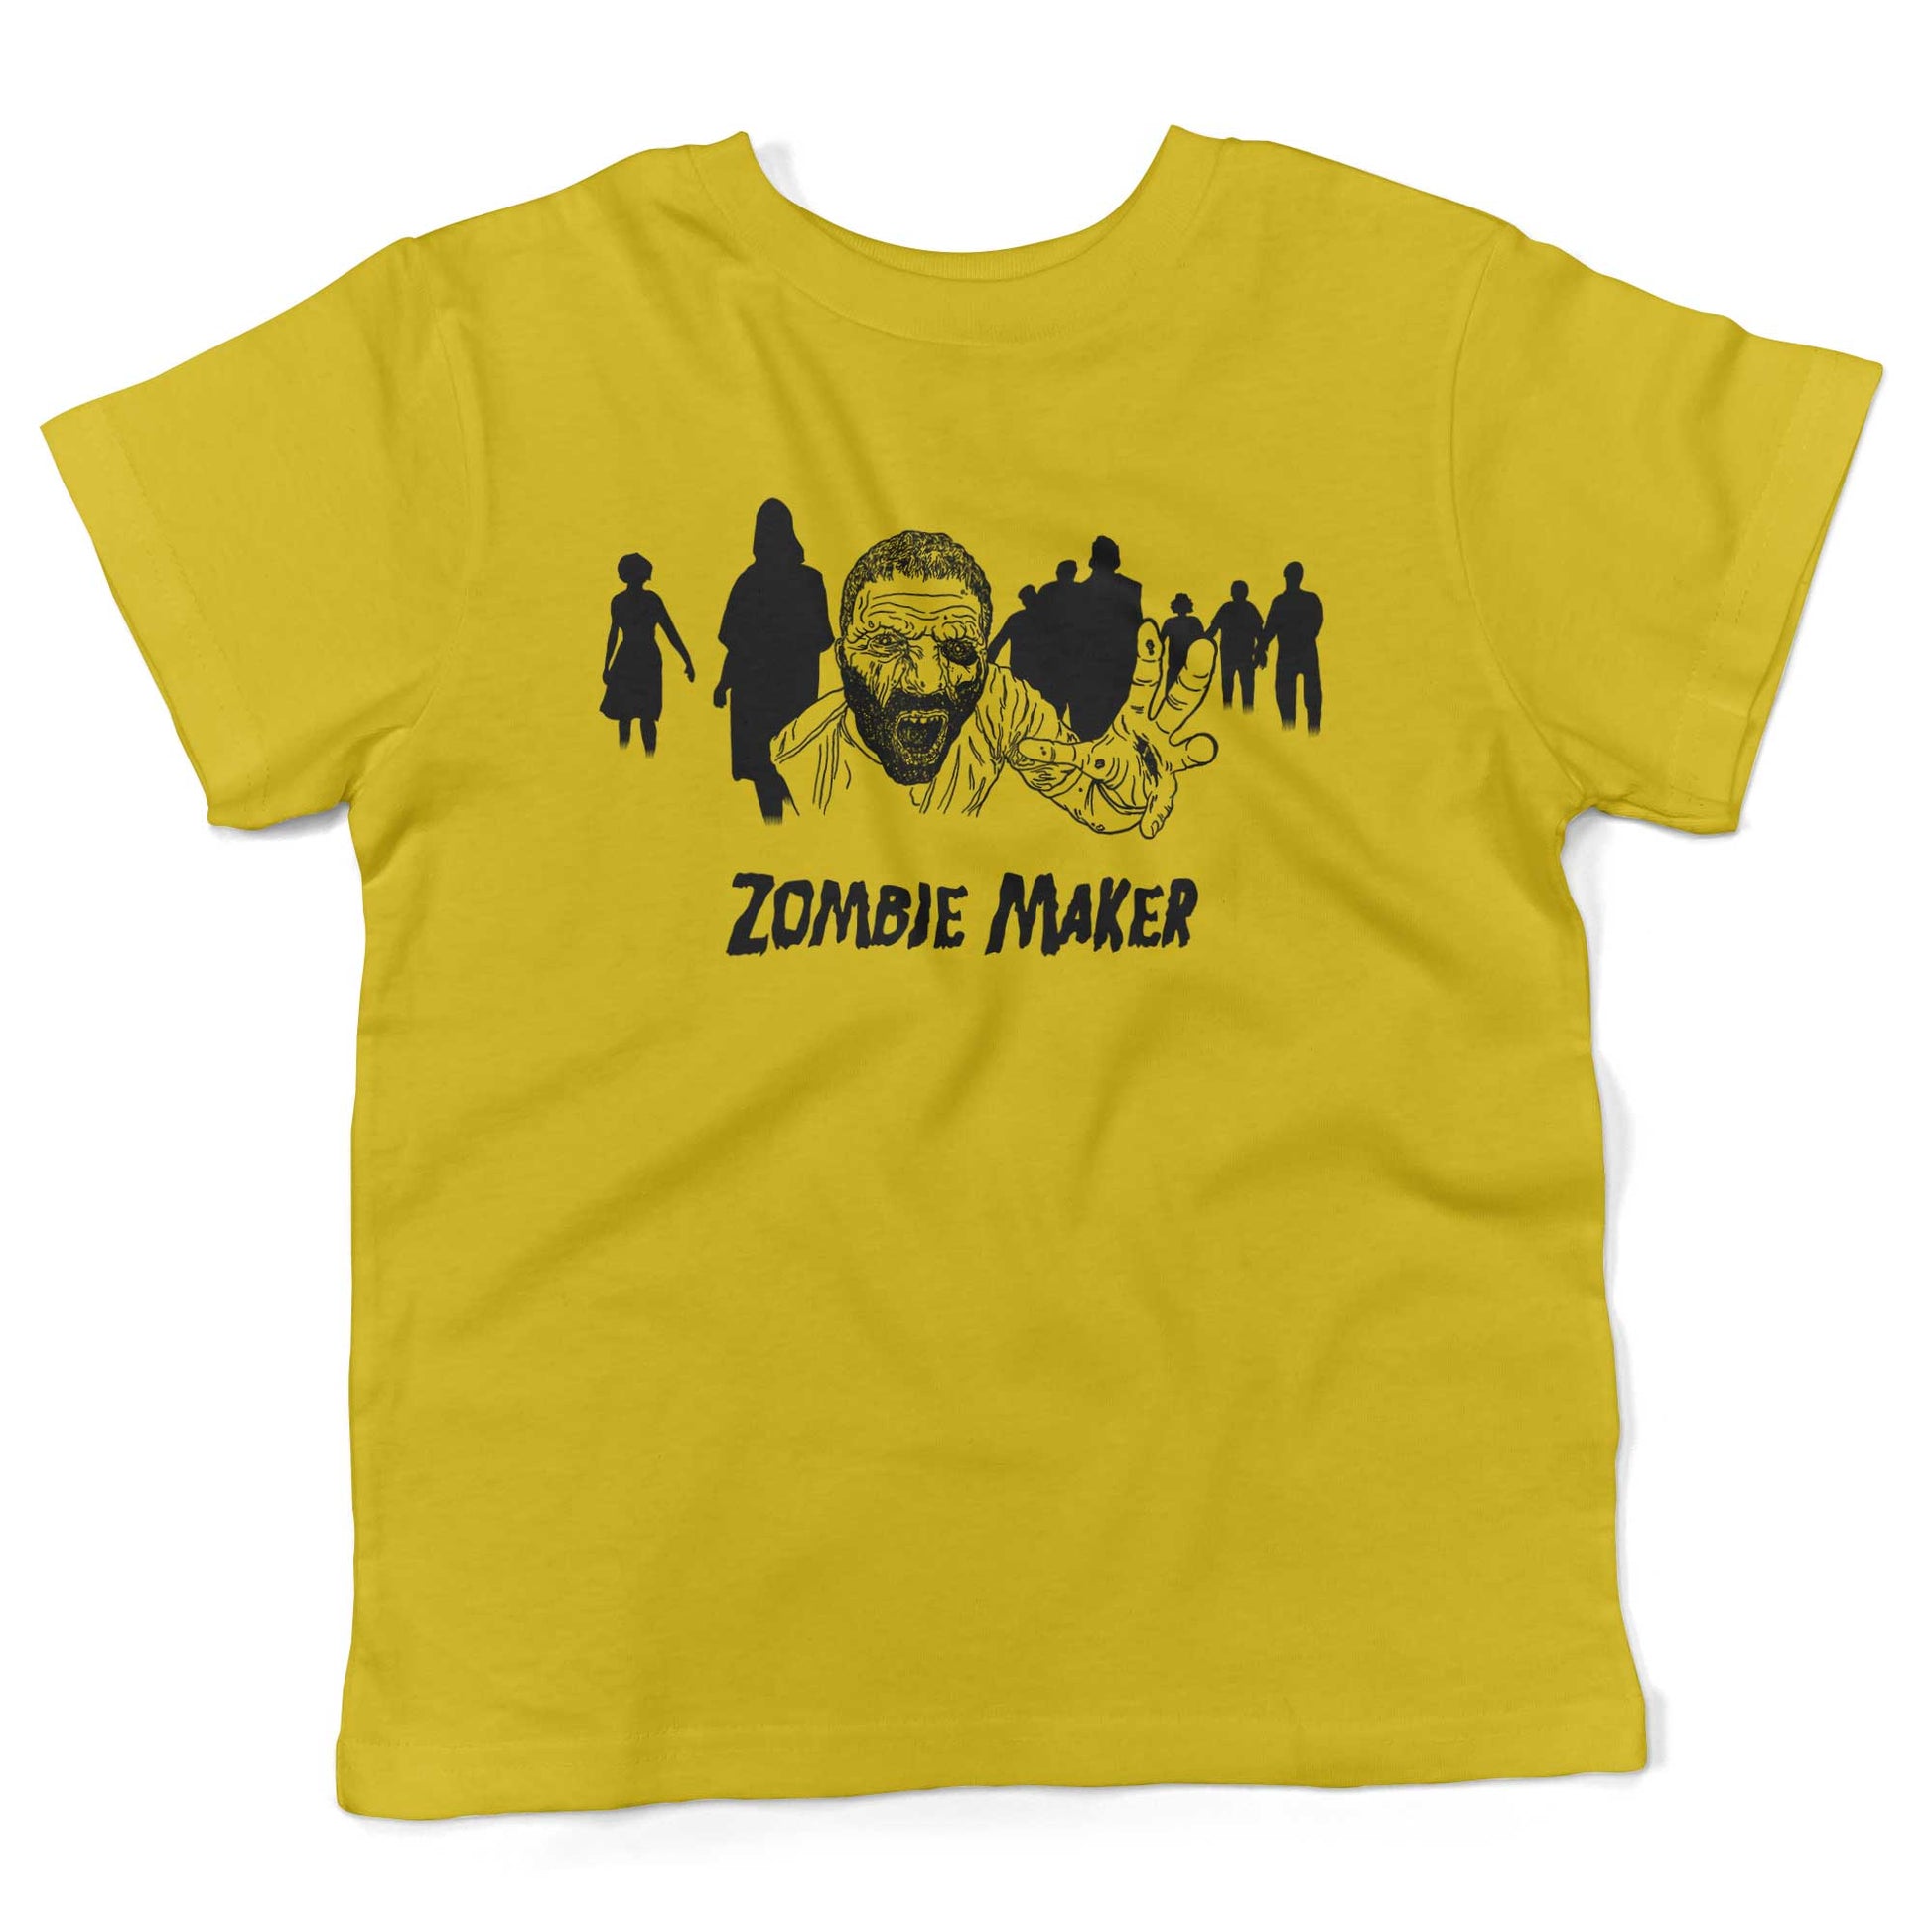 Zombie Maker Toddler Shirt-Sunshine Yellow-2T